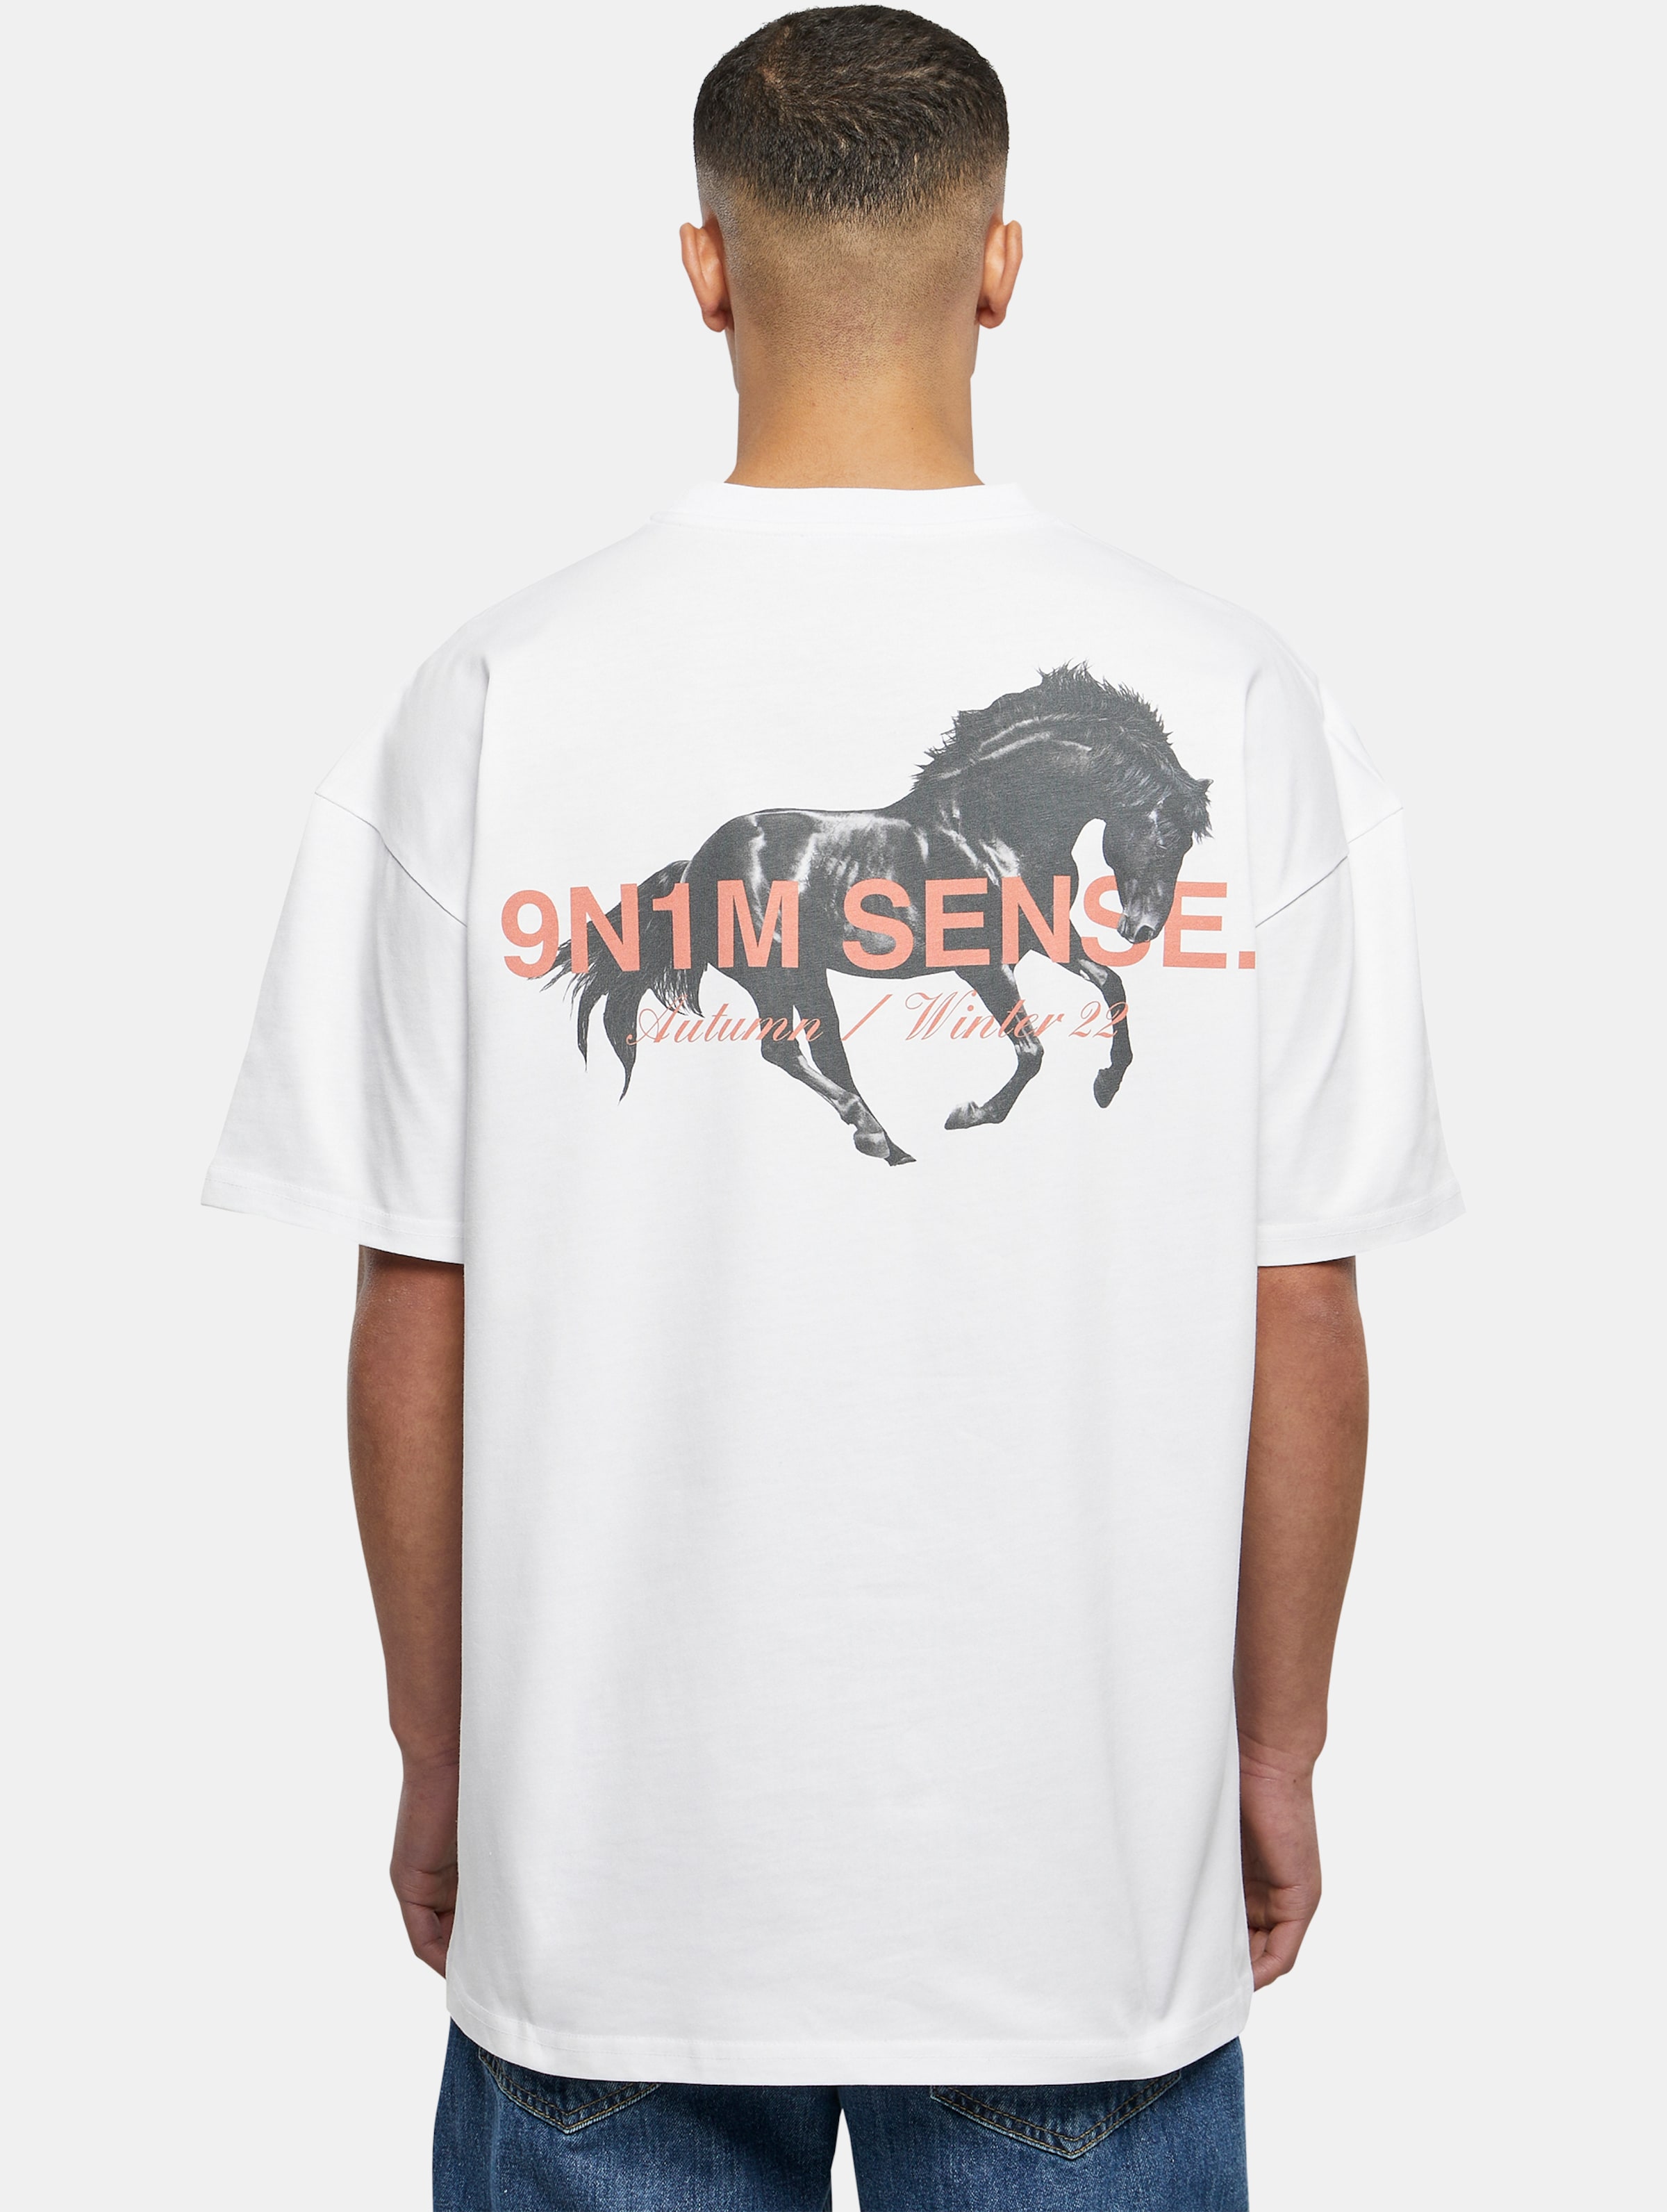 9N1M SENSE MUSTANG T-Shirt Männer,Unisex op kleur wit, Maat XXL